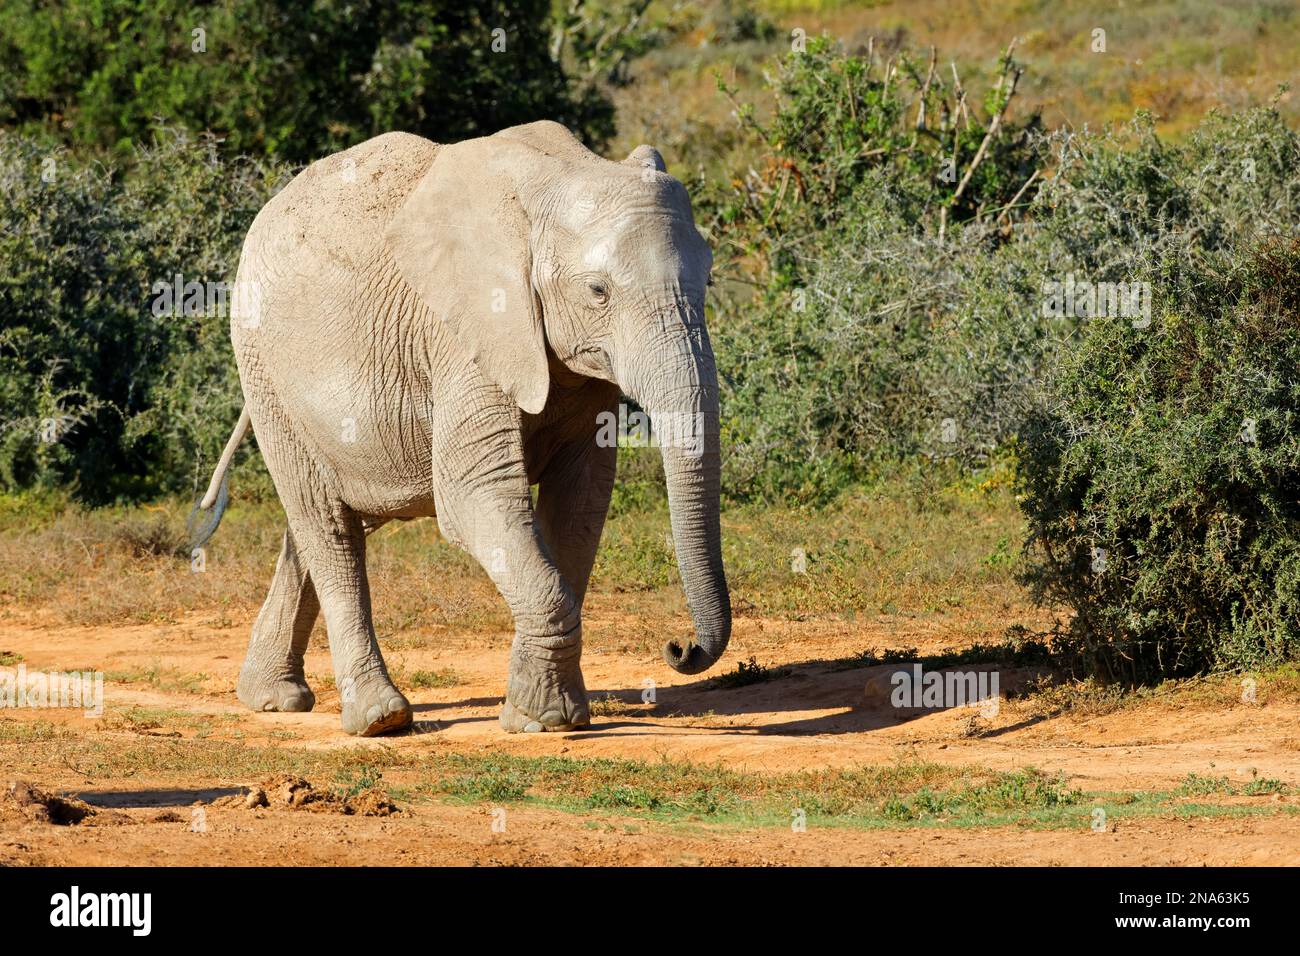 Ein afrikanischer Elefant (Loxodonta africana), der in einem natürlichen Lebensraum wandert, Addo Elephant National Park, Südafrika Stockfoto